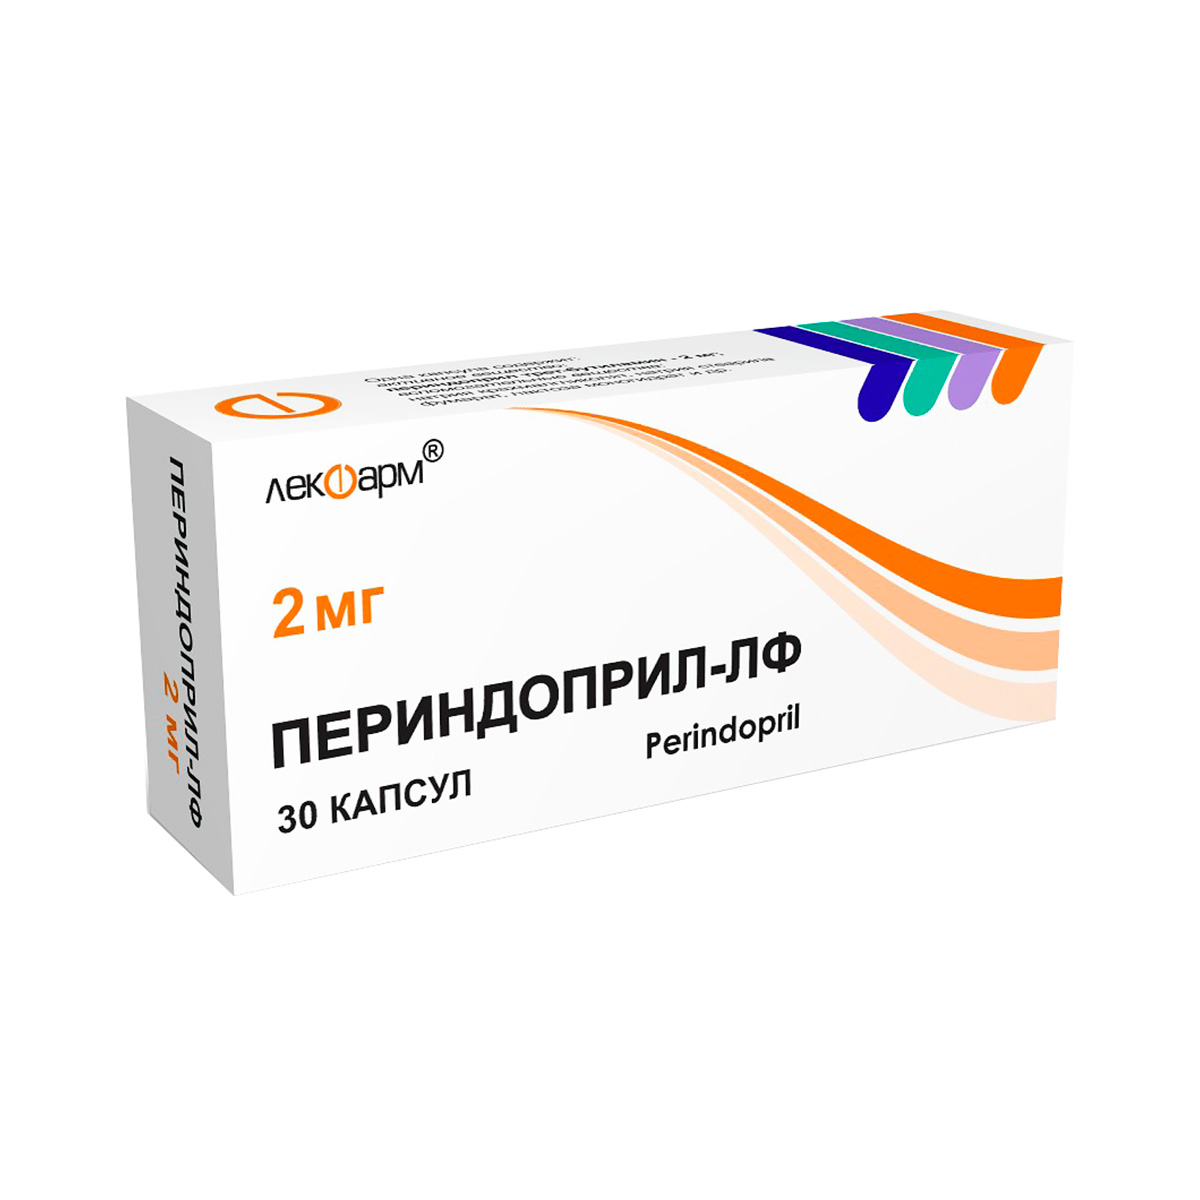 Периндоприл-ЛФ 2 мг капсулы 30 шт